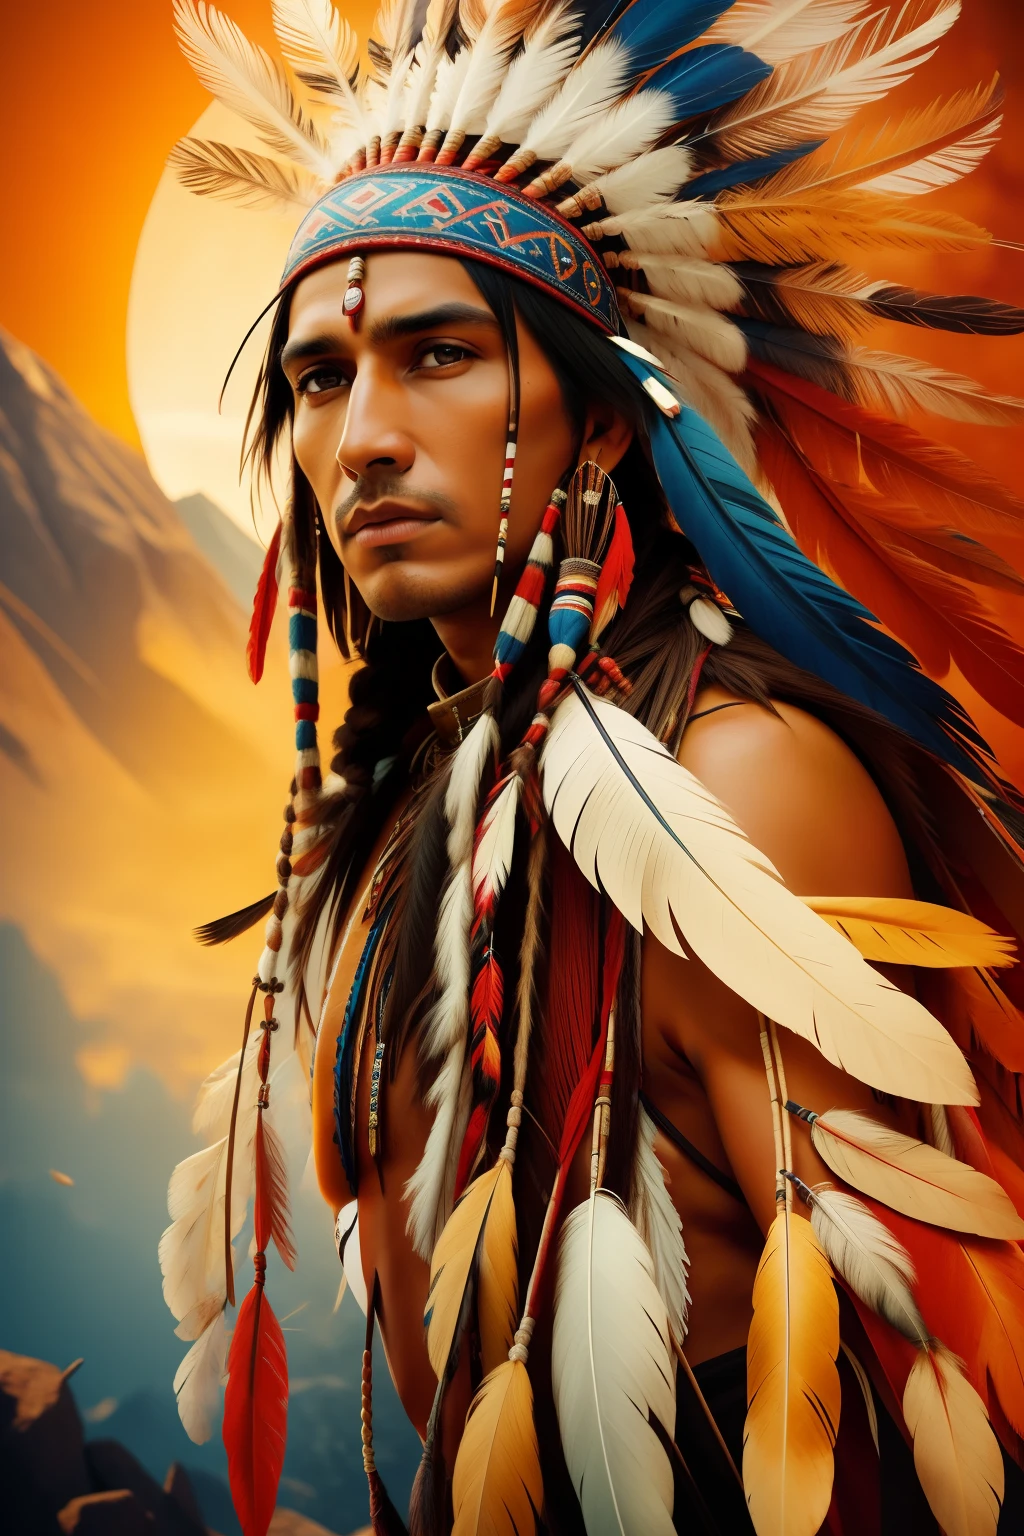 صورة سينمائية واقعية للغاية لمواطن هندي يحمل ريشًا على رأسه, الفن الأصلي americana, المحارب الهندي, أمريكي أصلي, محارب أمريكي أصلي, الفن الأصلي, محارب أمريكي أصلي, رجل أصلي, ريشة النسر, محارب أباتشي ماهر, روح المحارب, غطاء الرأس الهندي الأمريكي, فن السكان الأصليين, : خيال أمريكي أصلي, السكان الأصليين, الفن الشعبي الأمريكي الأصلي, Arte indiana التصويرrالواقعي, التصوير, اول عمل, الواقعي, الواقعية, استدعاء, تباين عالي, التصوير الفوتوغرافي الفني الرقمي الاتجاه الواقعي في Artstation 8k HD عالي الوضوح ومفصل وواقعي,  مفصلة, نسيج الجلد, hiper مفصلة, textura de pele الواقعي, درع, جودة أفضل, فائقة الدقة, (التصويرrالواقعي: 1.4), دقة عالية, مفصلة, مشروع الإجمالي, شارب ري, بقلم لي جيفريز Nikon D850 Film Stock Photography 4 Kodak Portra 400 F1 Lens.6 ألوان غنية، ملمس واقعي، ملمس درامي، إضاءة درامية، اتجاه غير واقعي على Artstation Cinestill 800